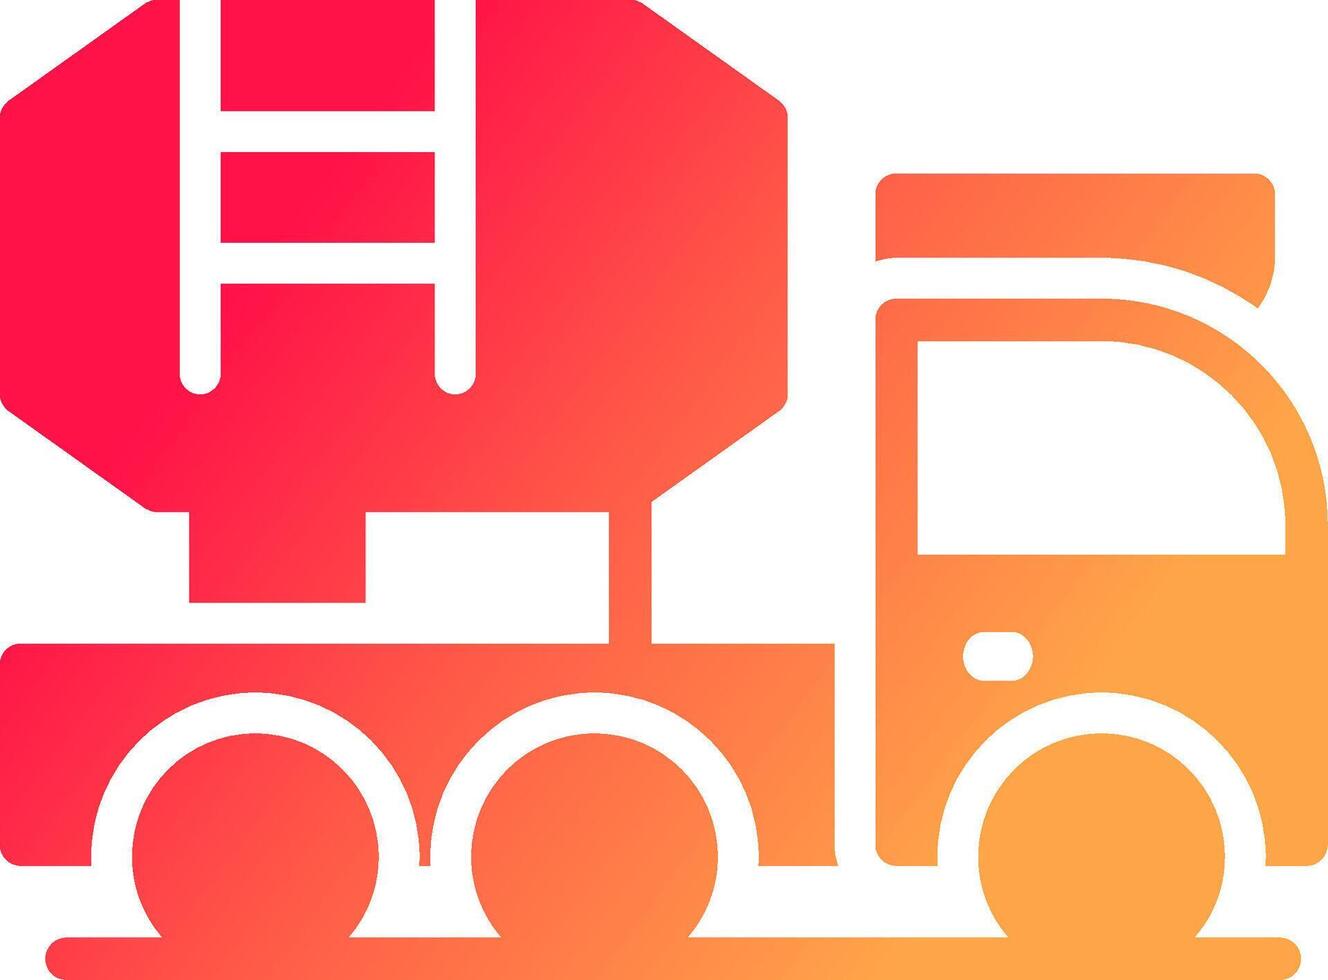 Mixer Truck Creative Icon Design vector